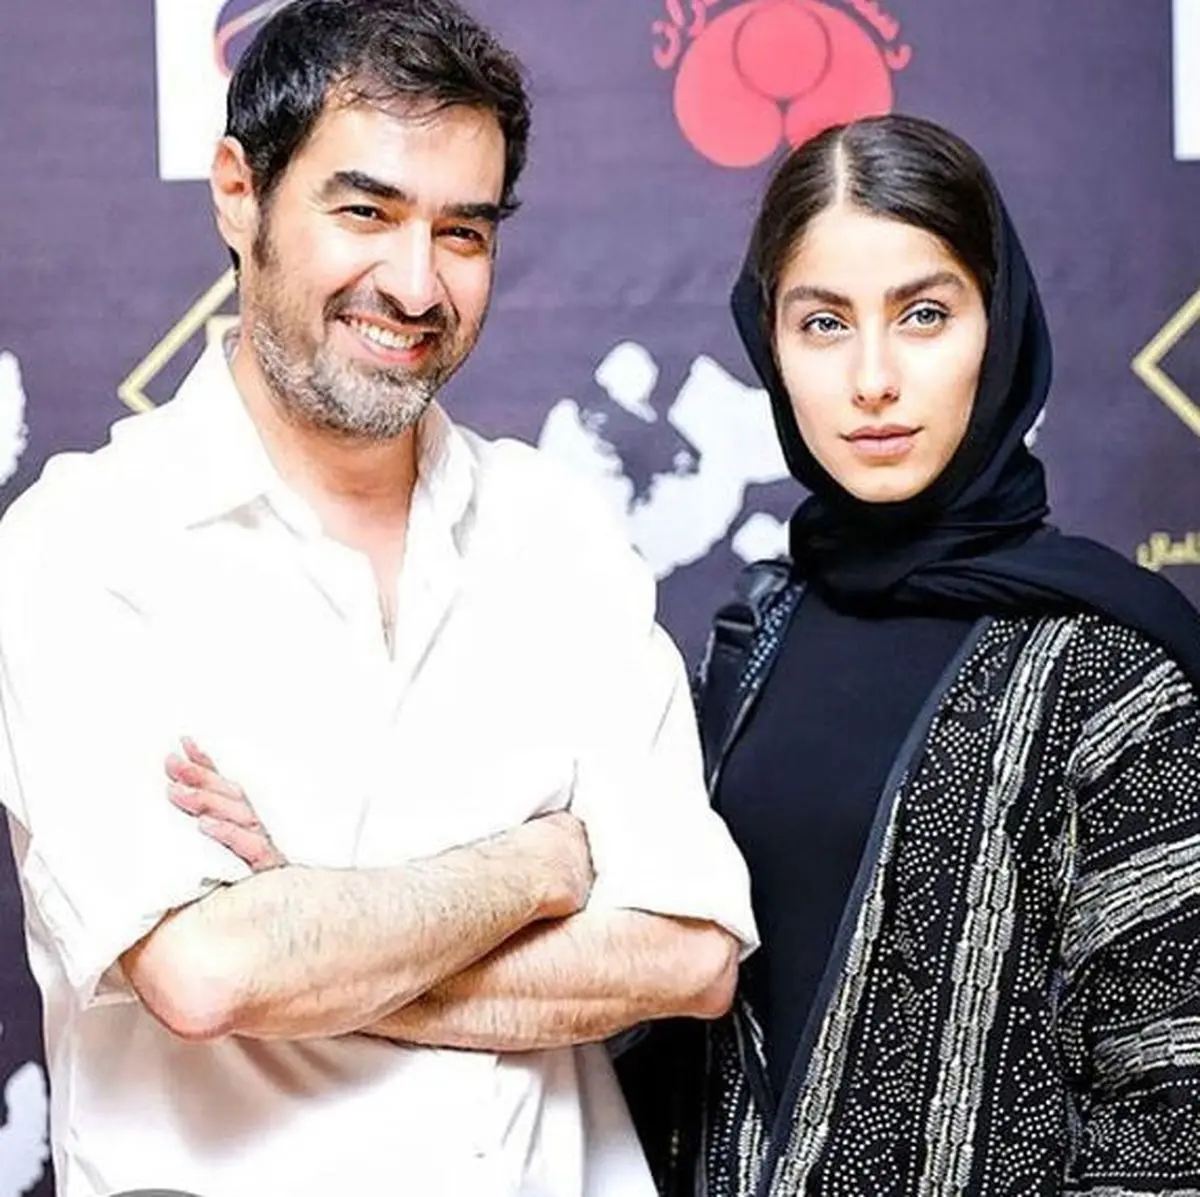 غیبت مشکوک شهاب حسینی در مراسم دیشب/ فیلم